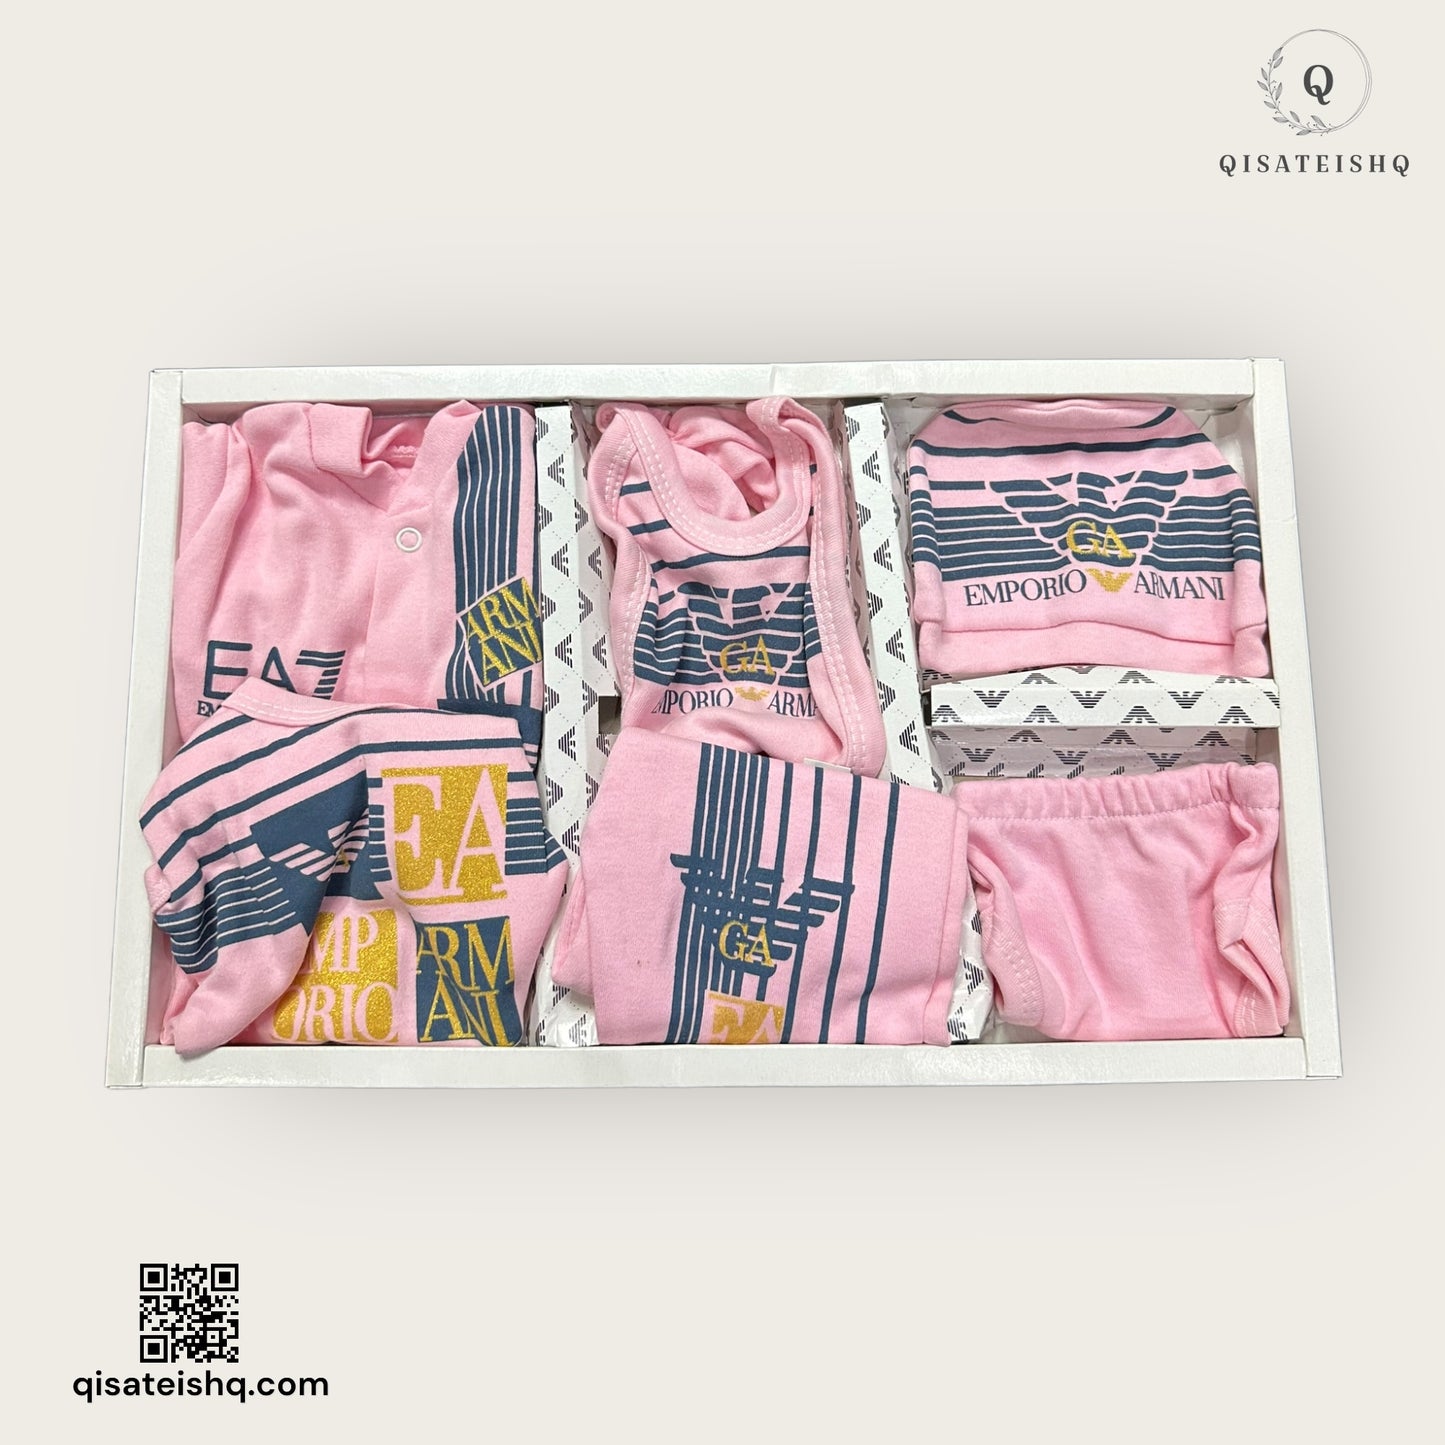 طقم ملابس أطفال حديثي الولادة بتصميم إمبريو أرماني باللون الوردي